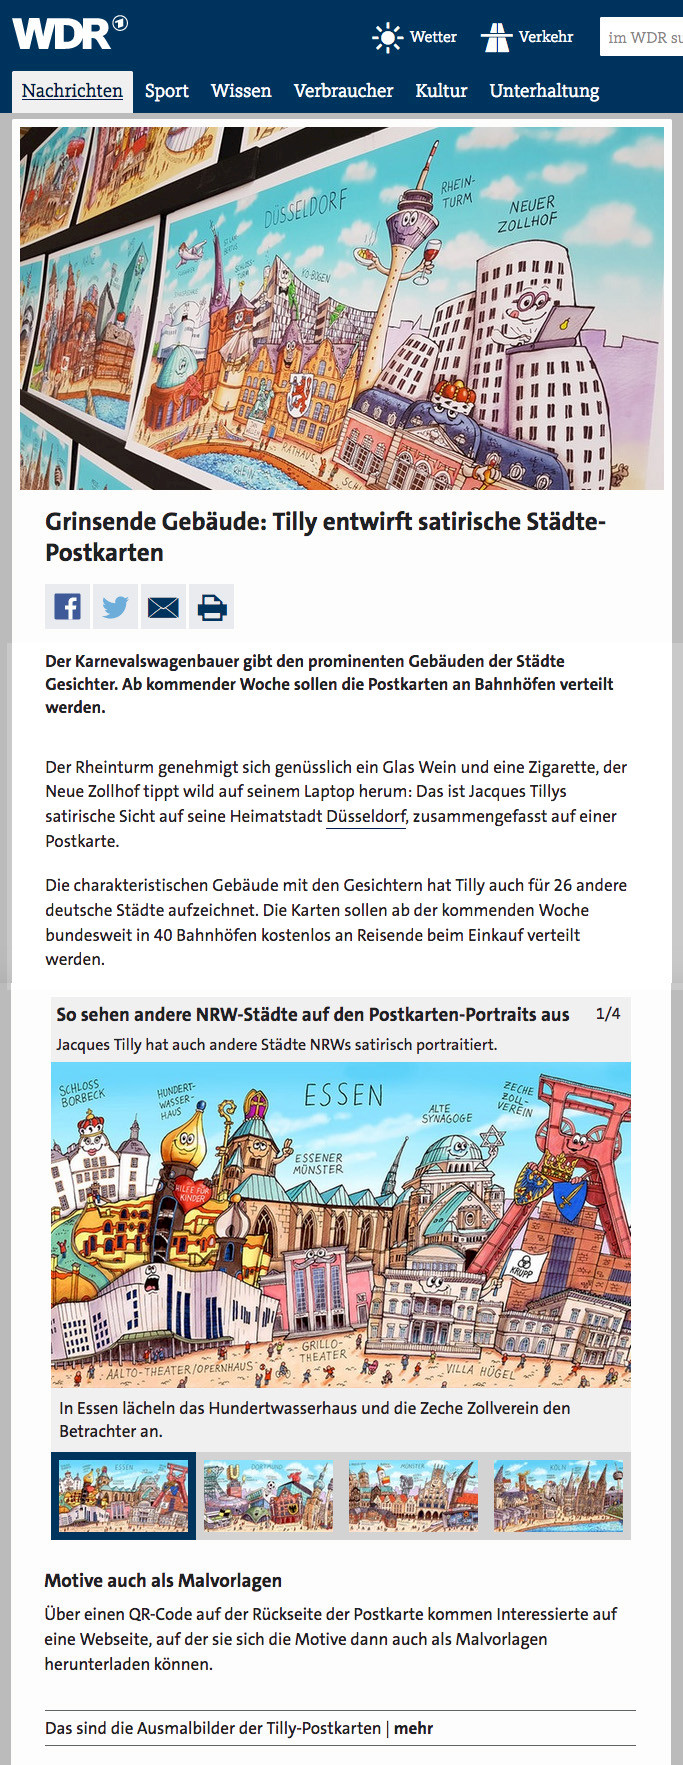 26.5.2021 Zur Quelle [https://www1.wdr.de/nachrichten/rheinland/duesseldorf-tilly-postkarten-staedte-100.html]